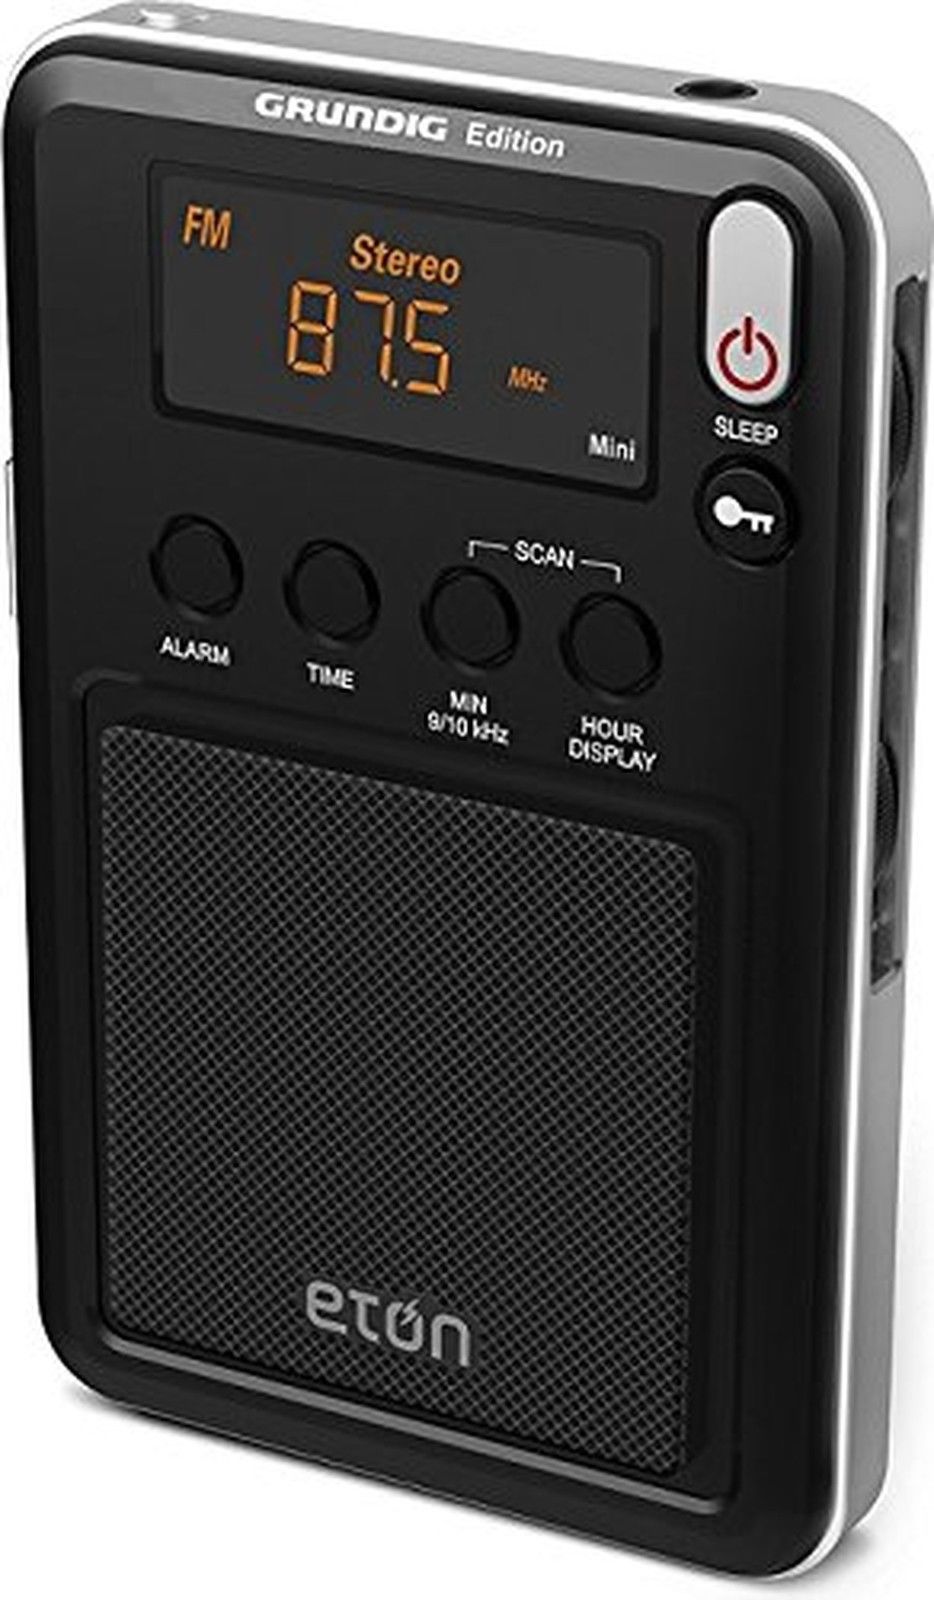 Đài radio cầm tay Grundig Edition Mini - AM/FM/Shortwave